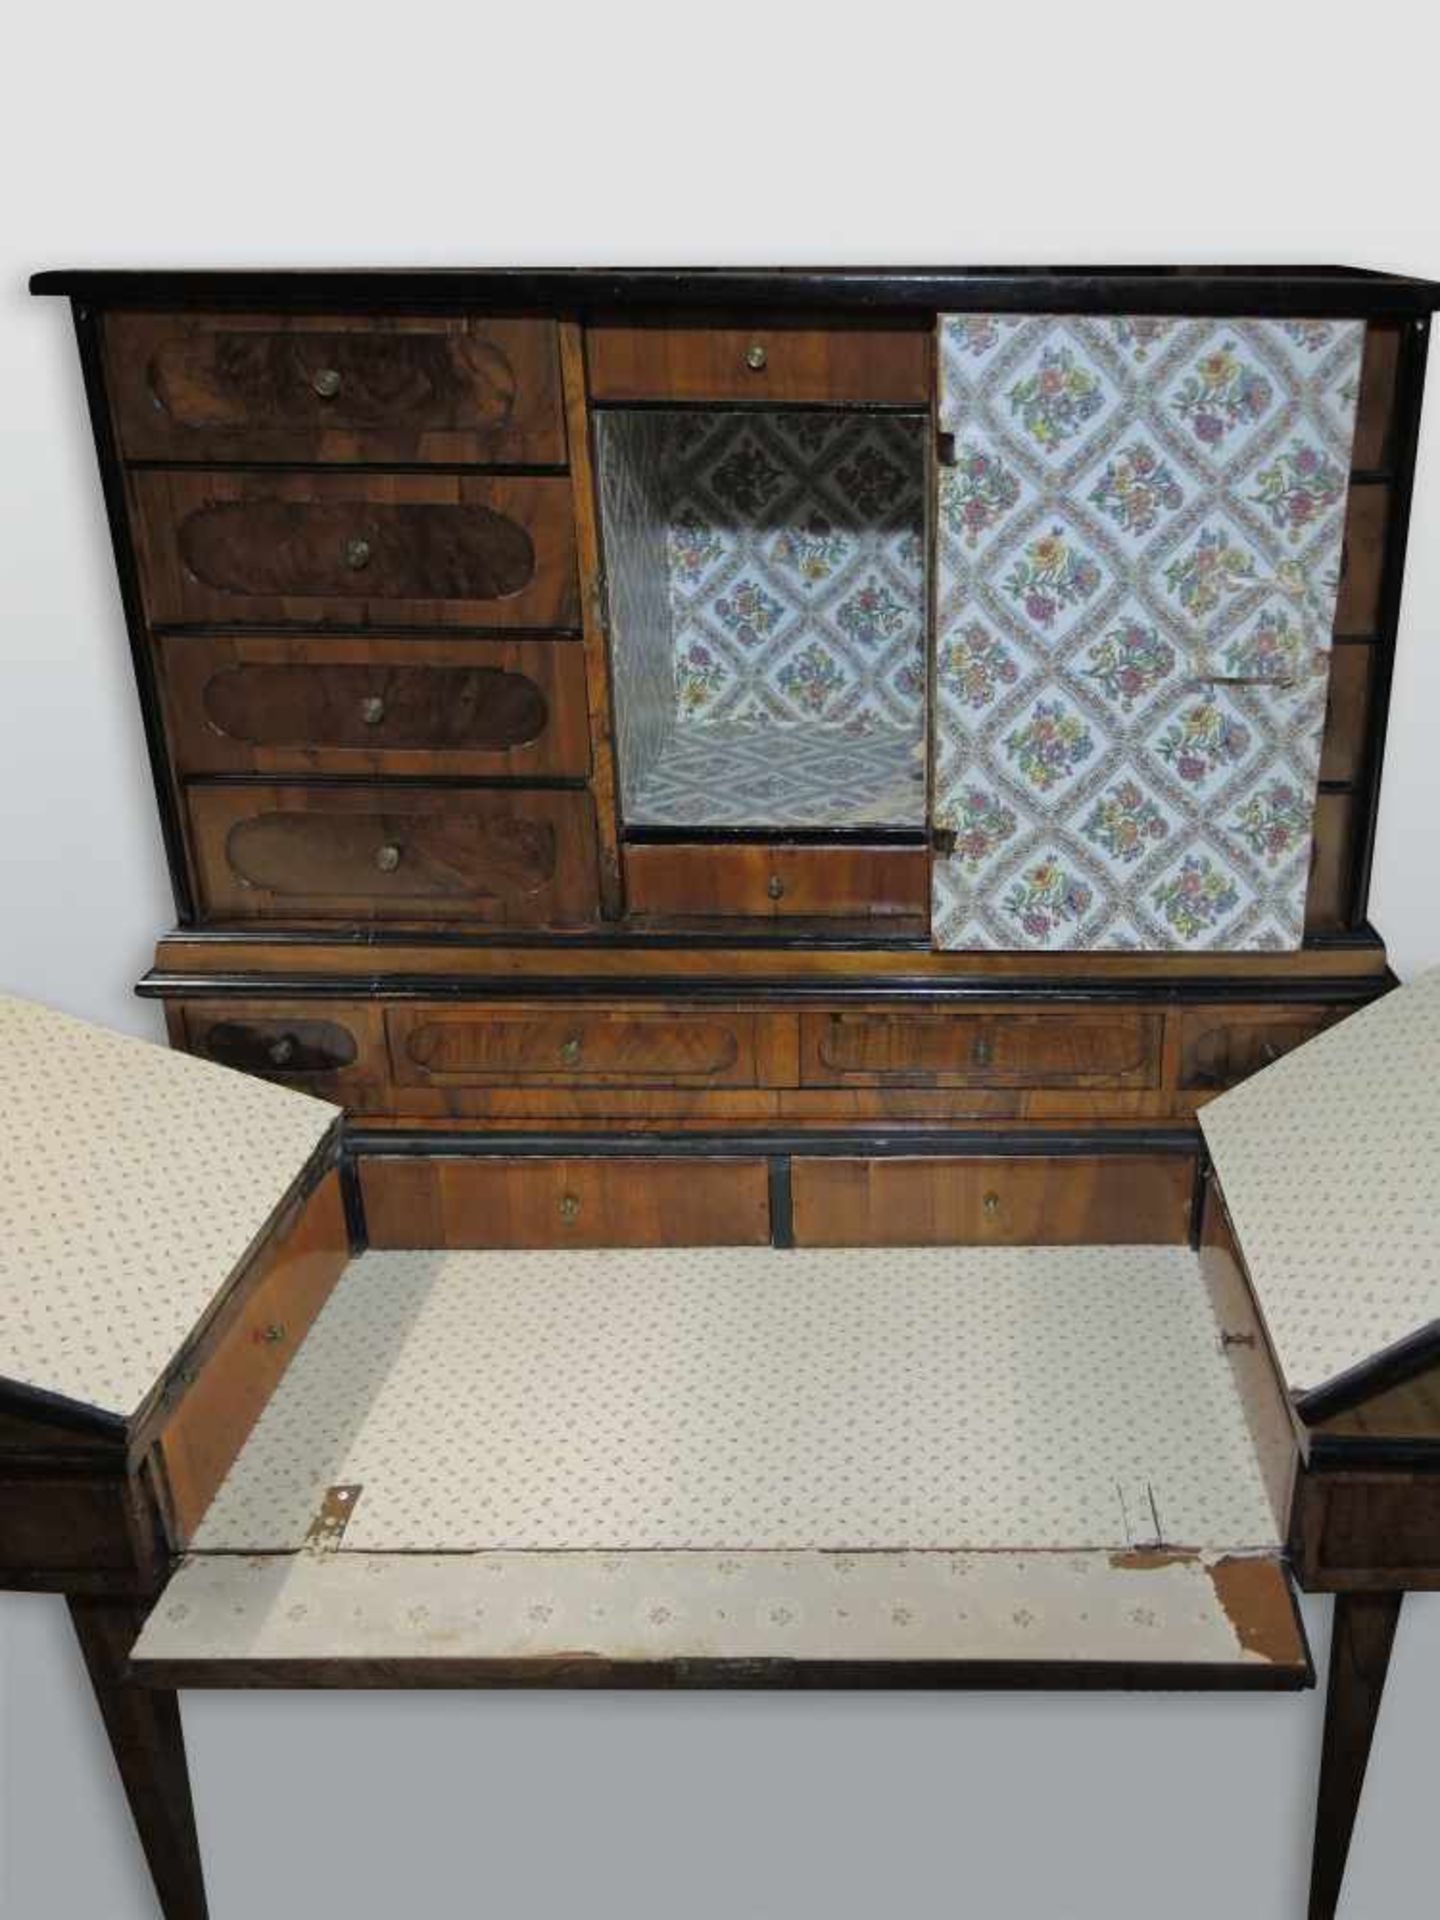 Aufsatz-Schreibmöbel mit TabernakelNussbaum-Untergestell. Aufsatz um 1820, Rest um 1750, - Bild 2 aus 3